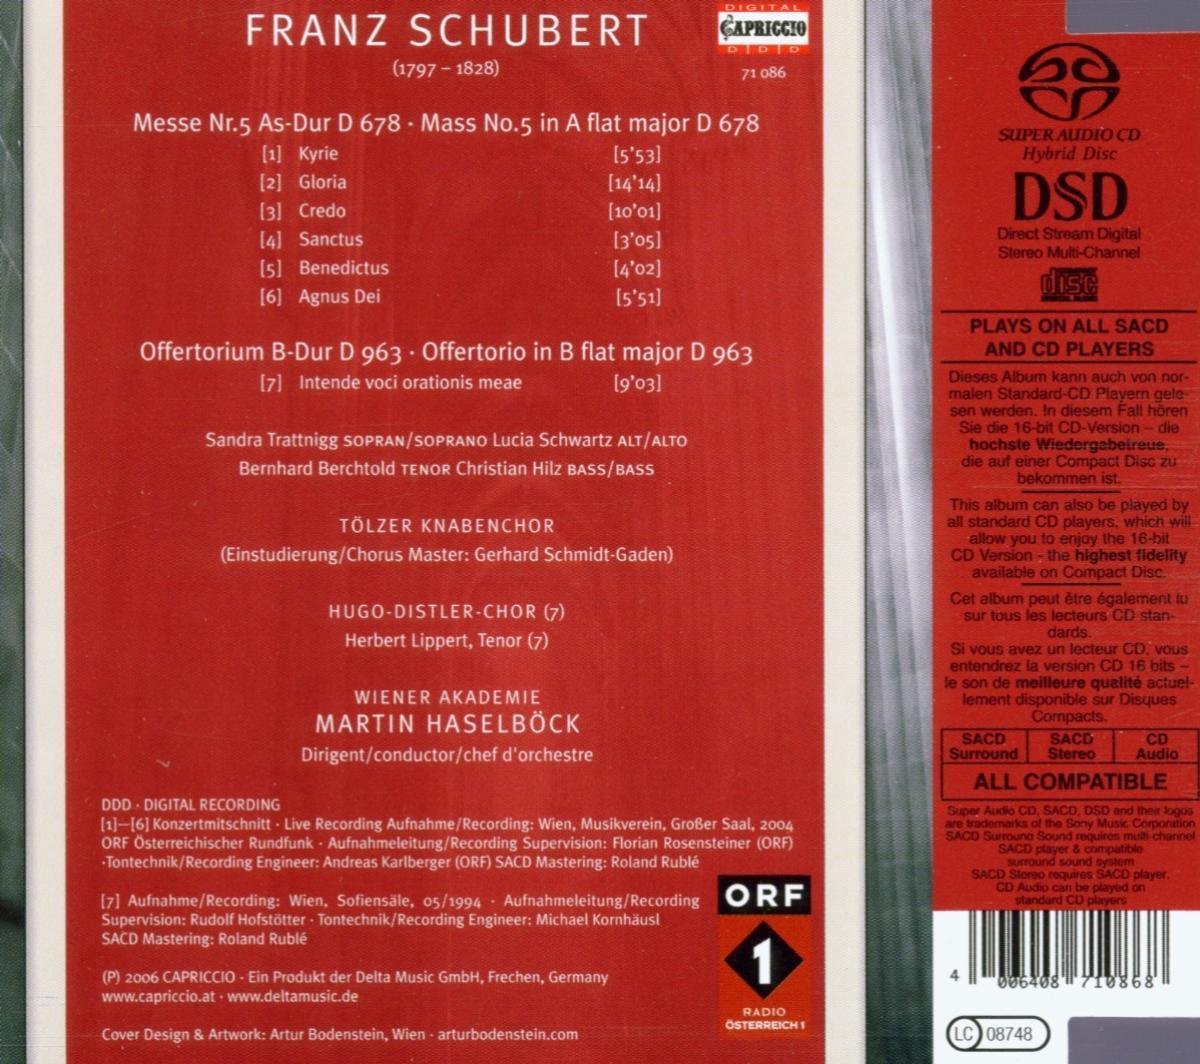 Schubert: Mass No. 5 in A flat major, D678 - slide-1